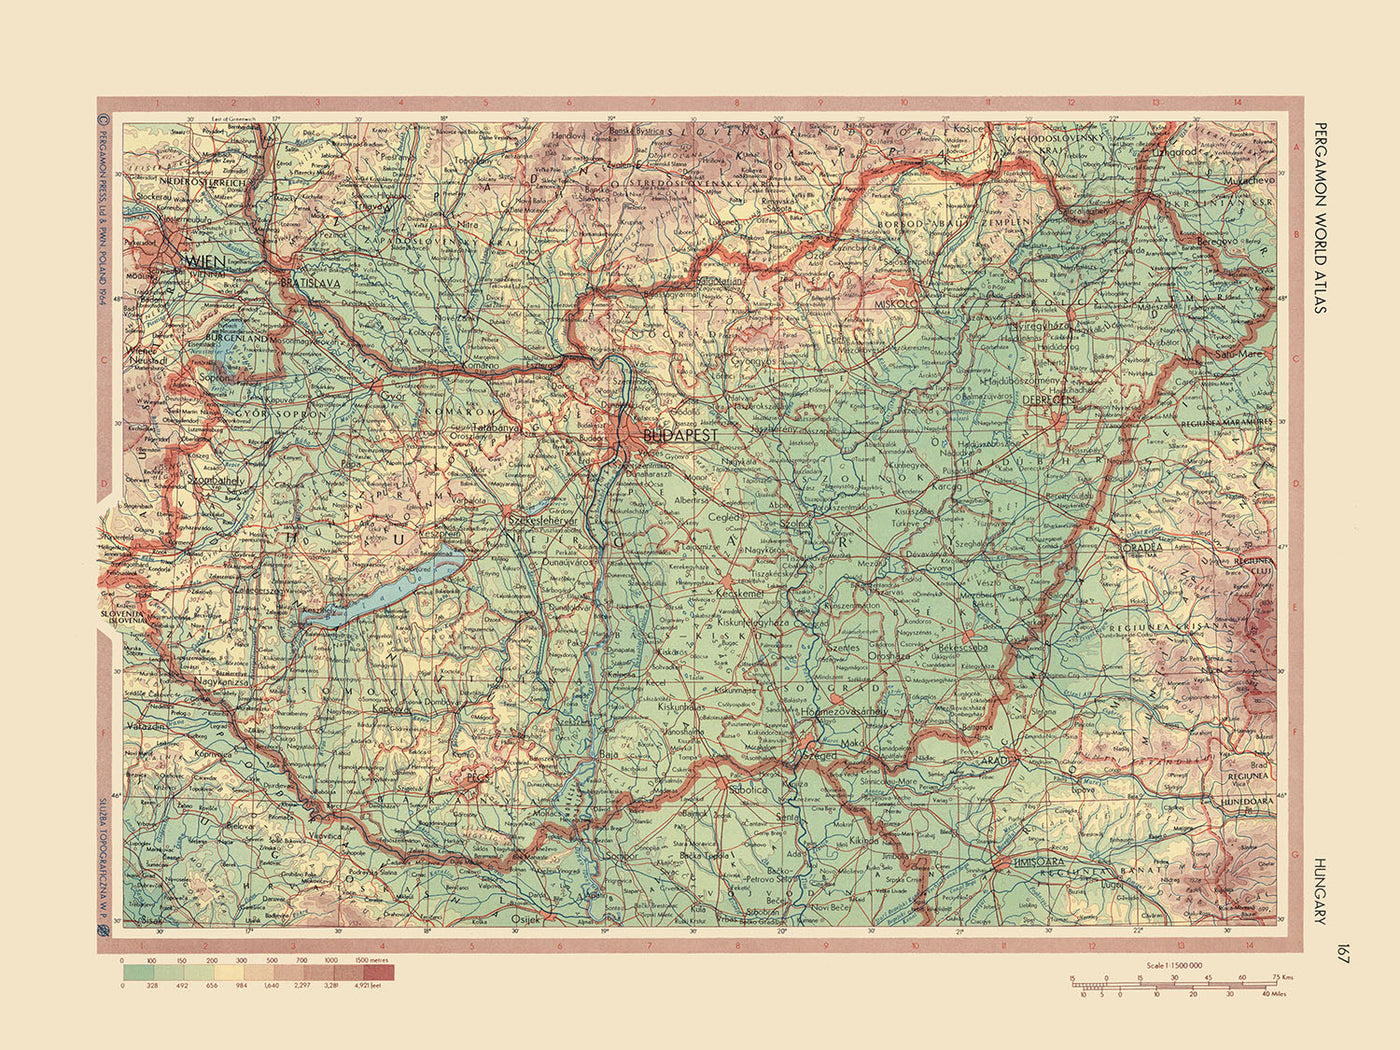 Mapa antiguo de Hungría, 1967: Budapest, río Danubio, lago Balatón, gran llanura húngara, montañas Mátra